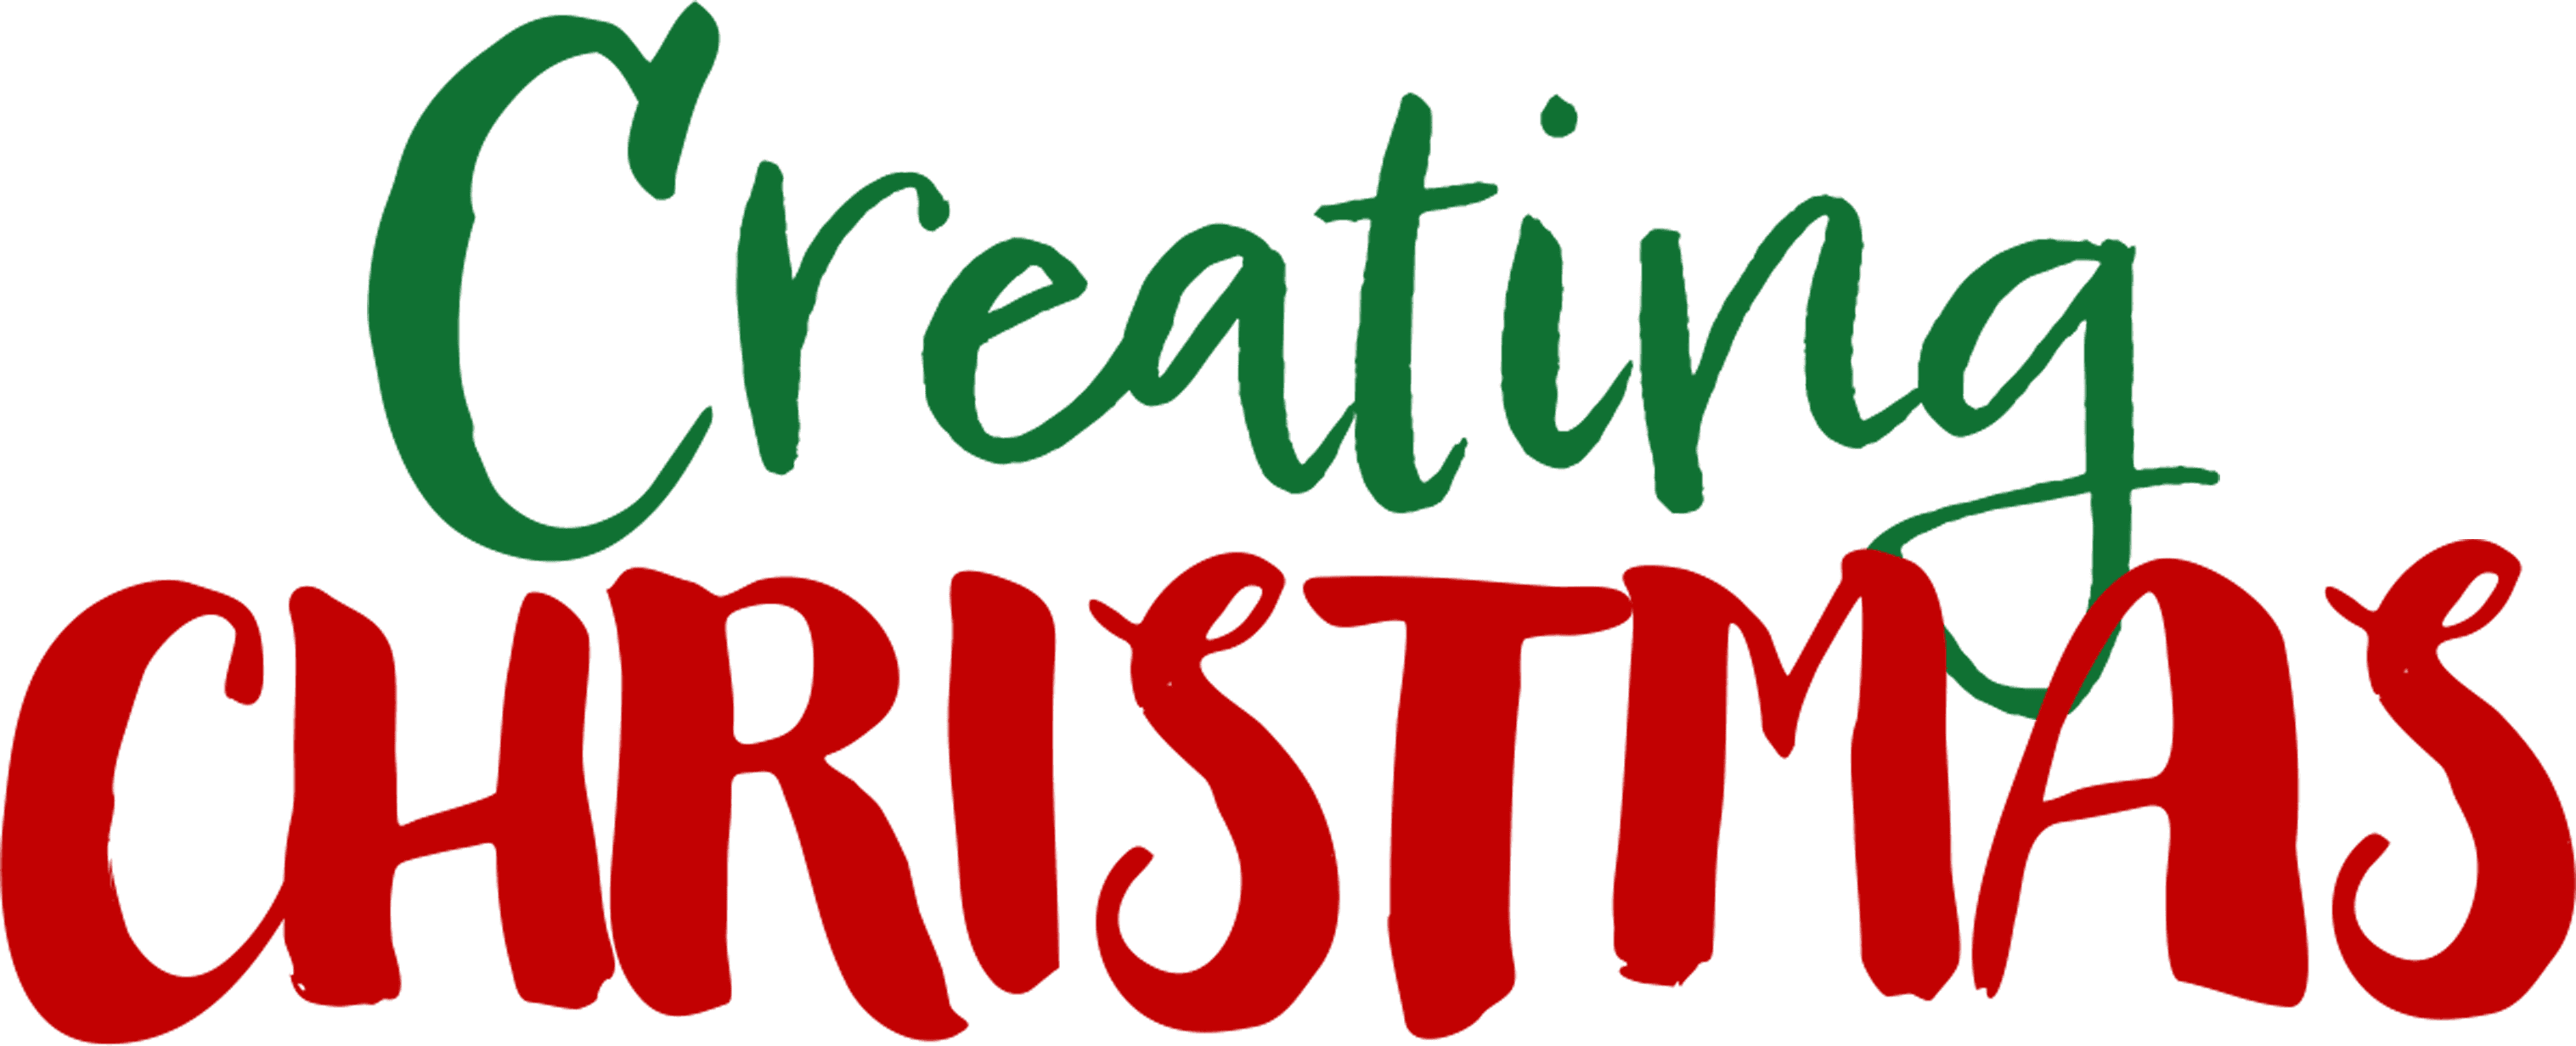 Creating Christmas logo